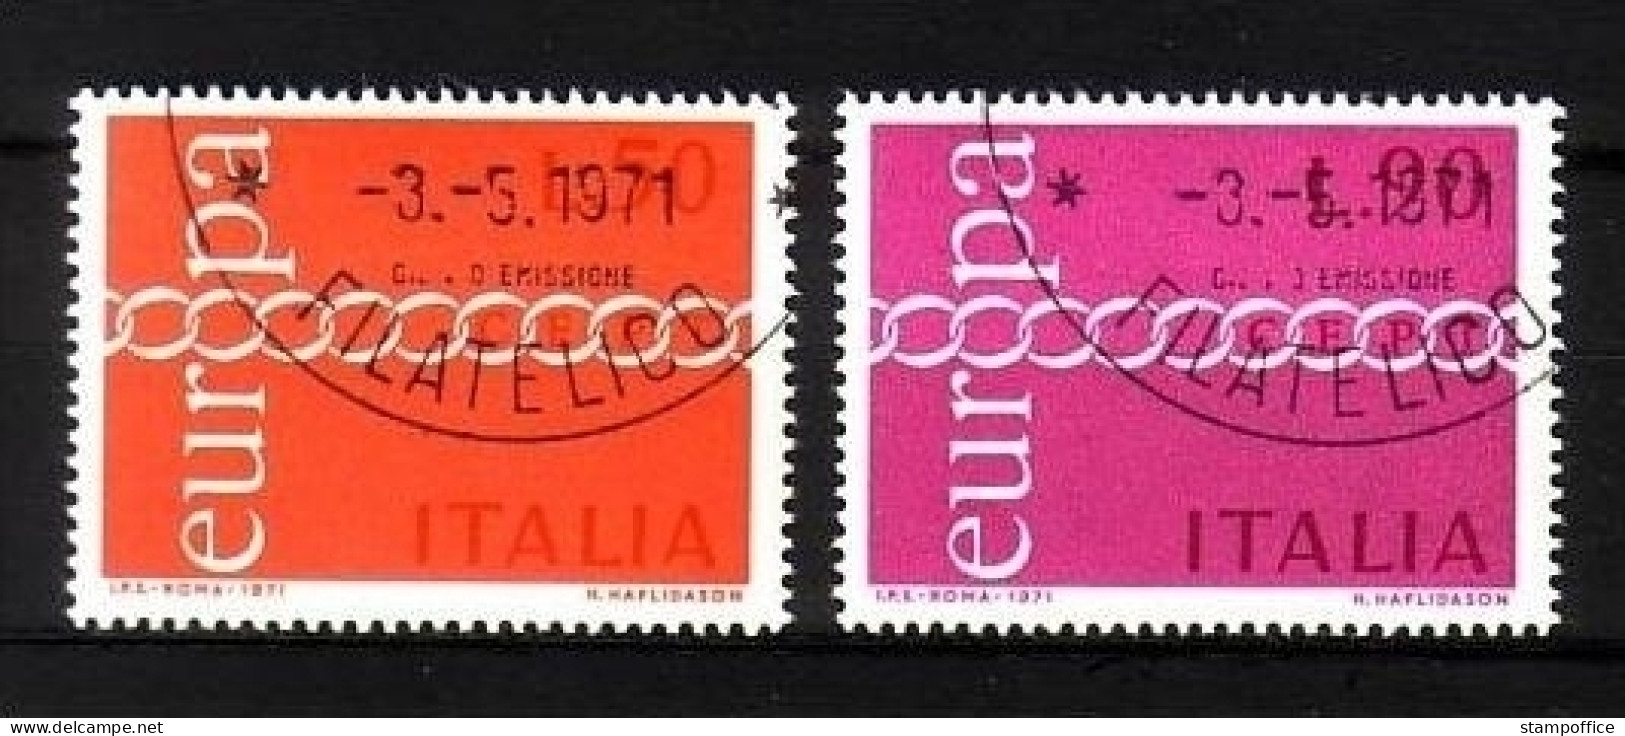 ITALIEN MI-NR. 1335-1336 O EUROPA 1971 - KETTE - 1971